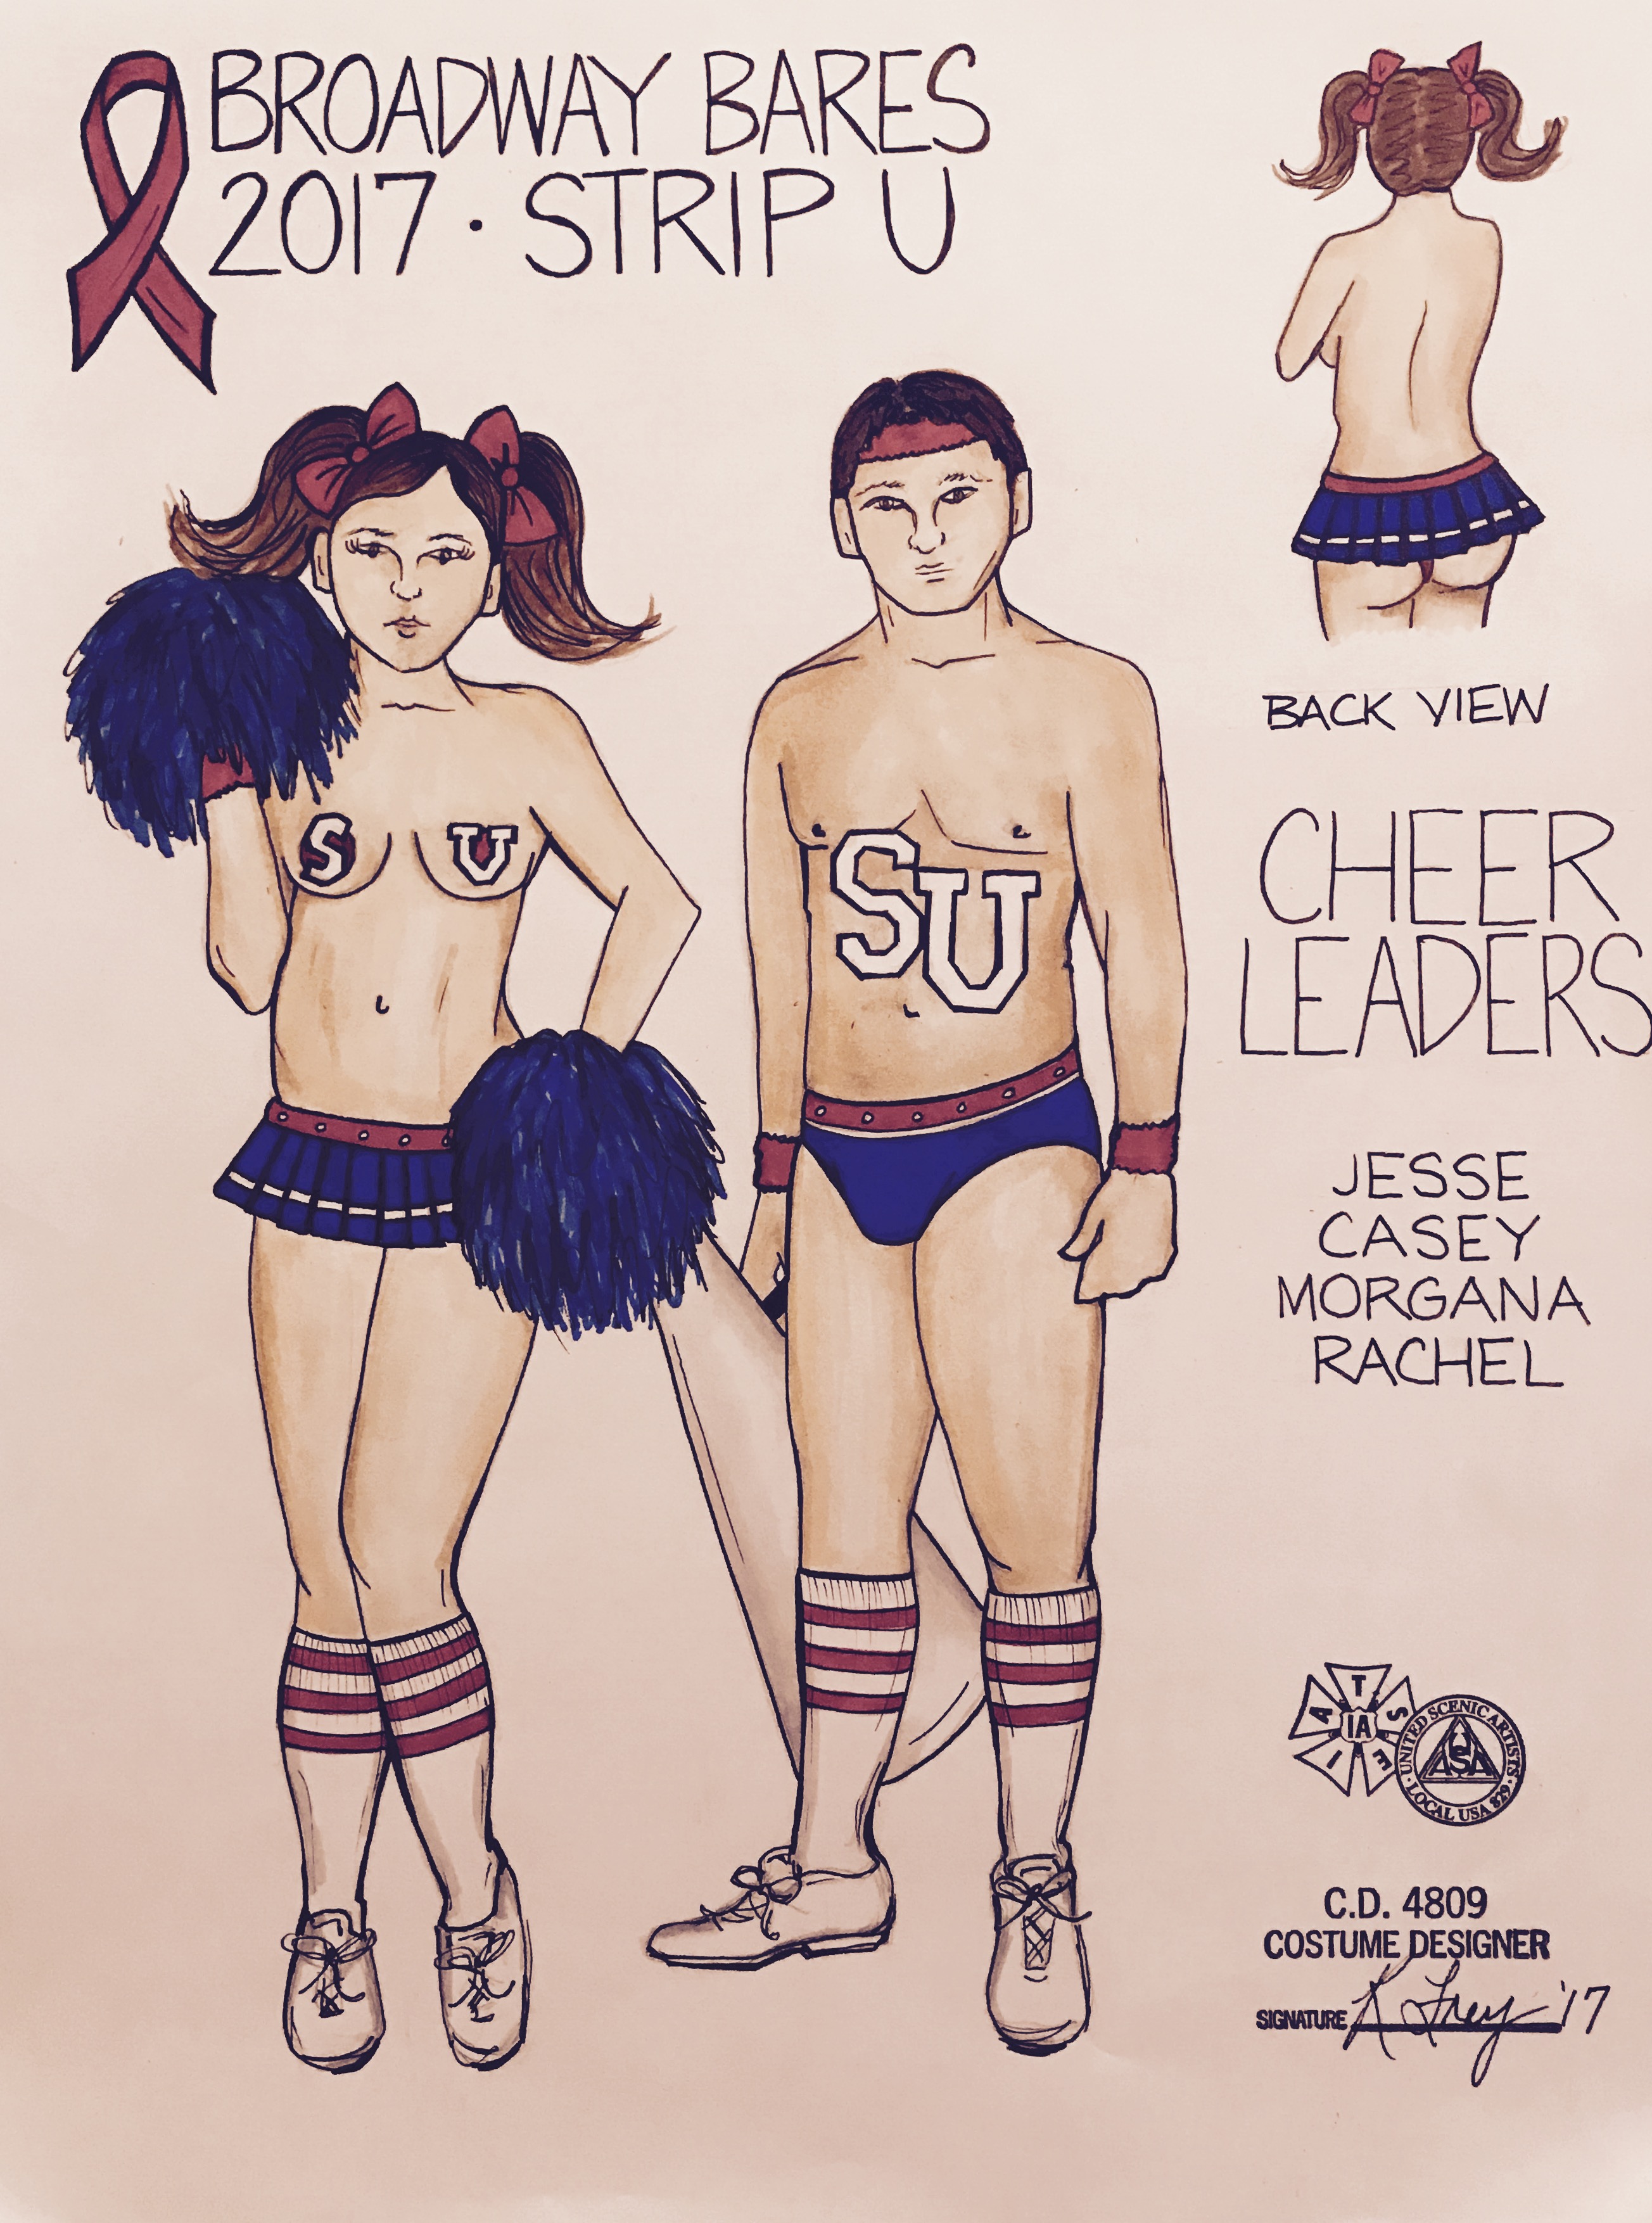 Broadway Bares 27: Strip U (Cheerleaders)